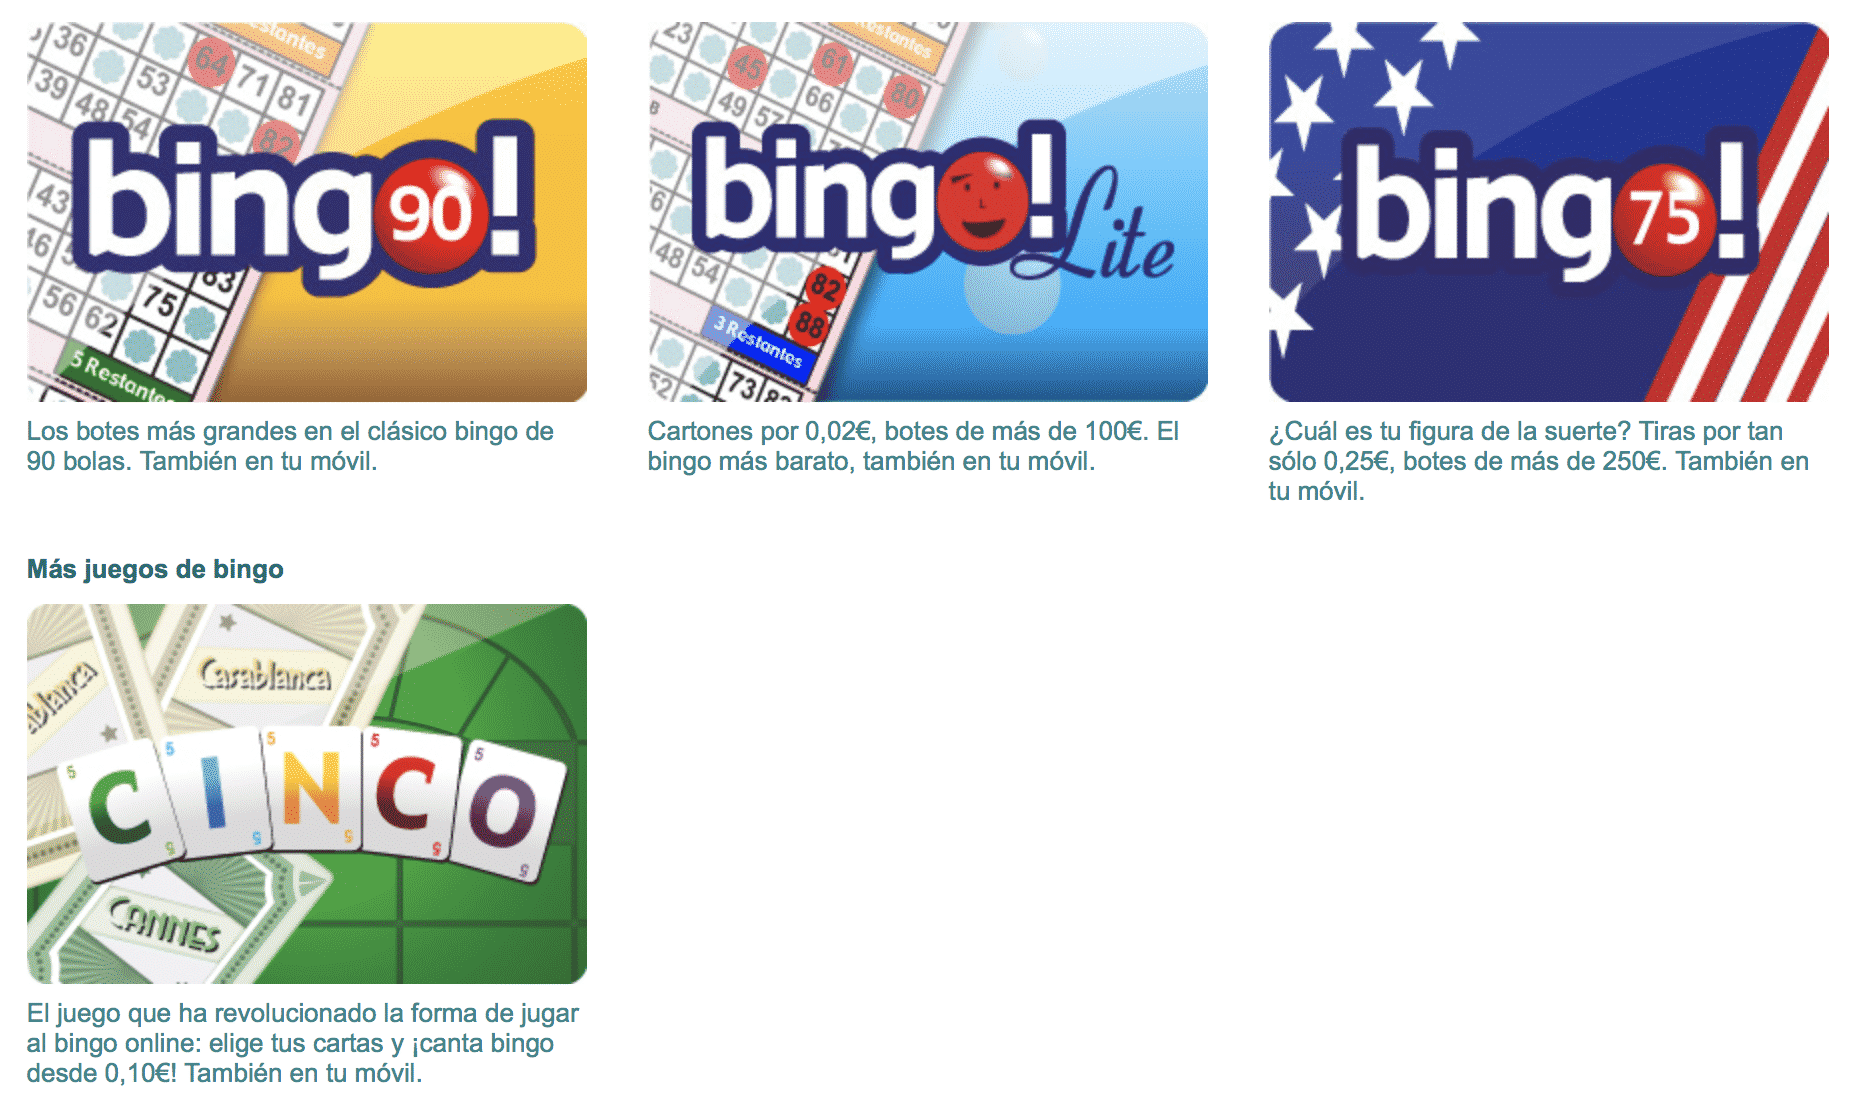 10 gratis para bingo Portugal juegos de casinos 2019 2340